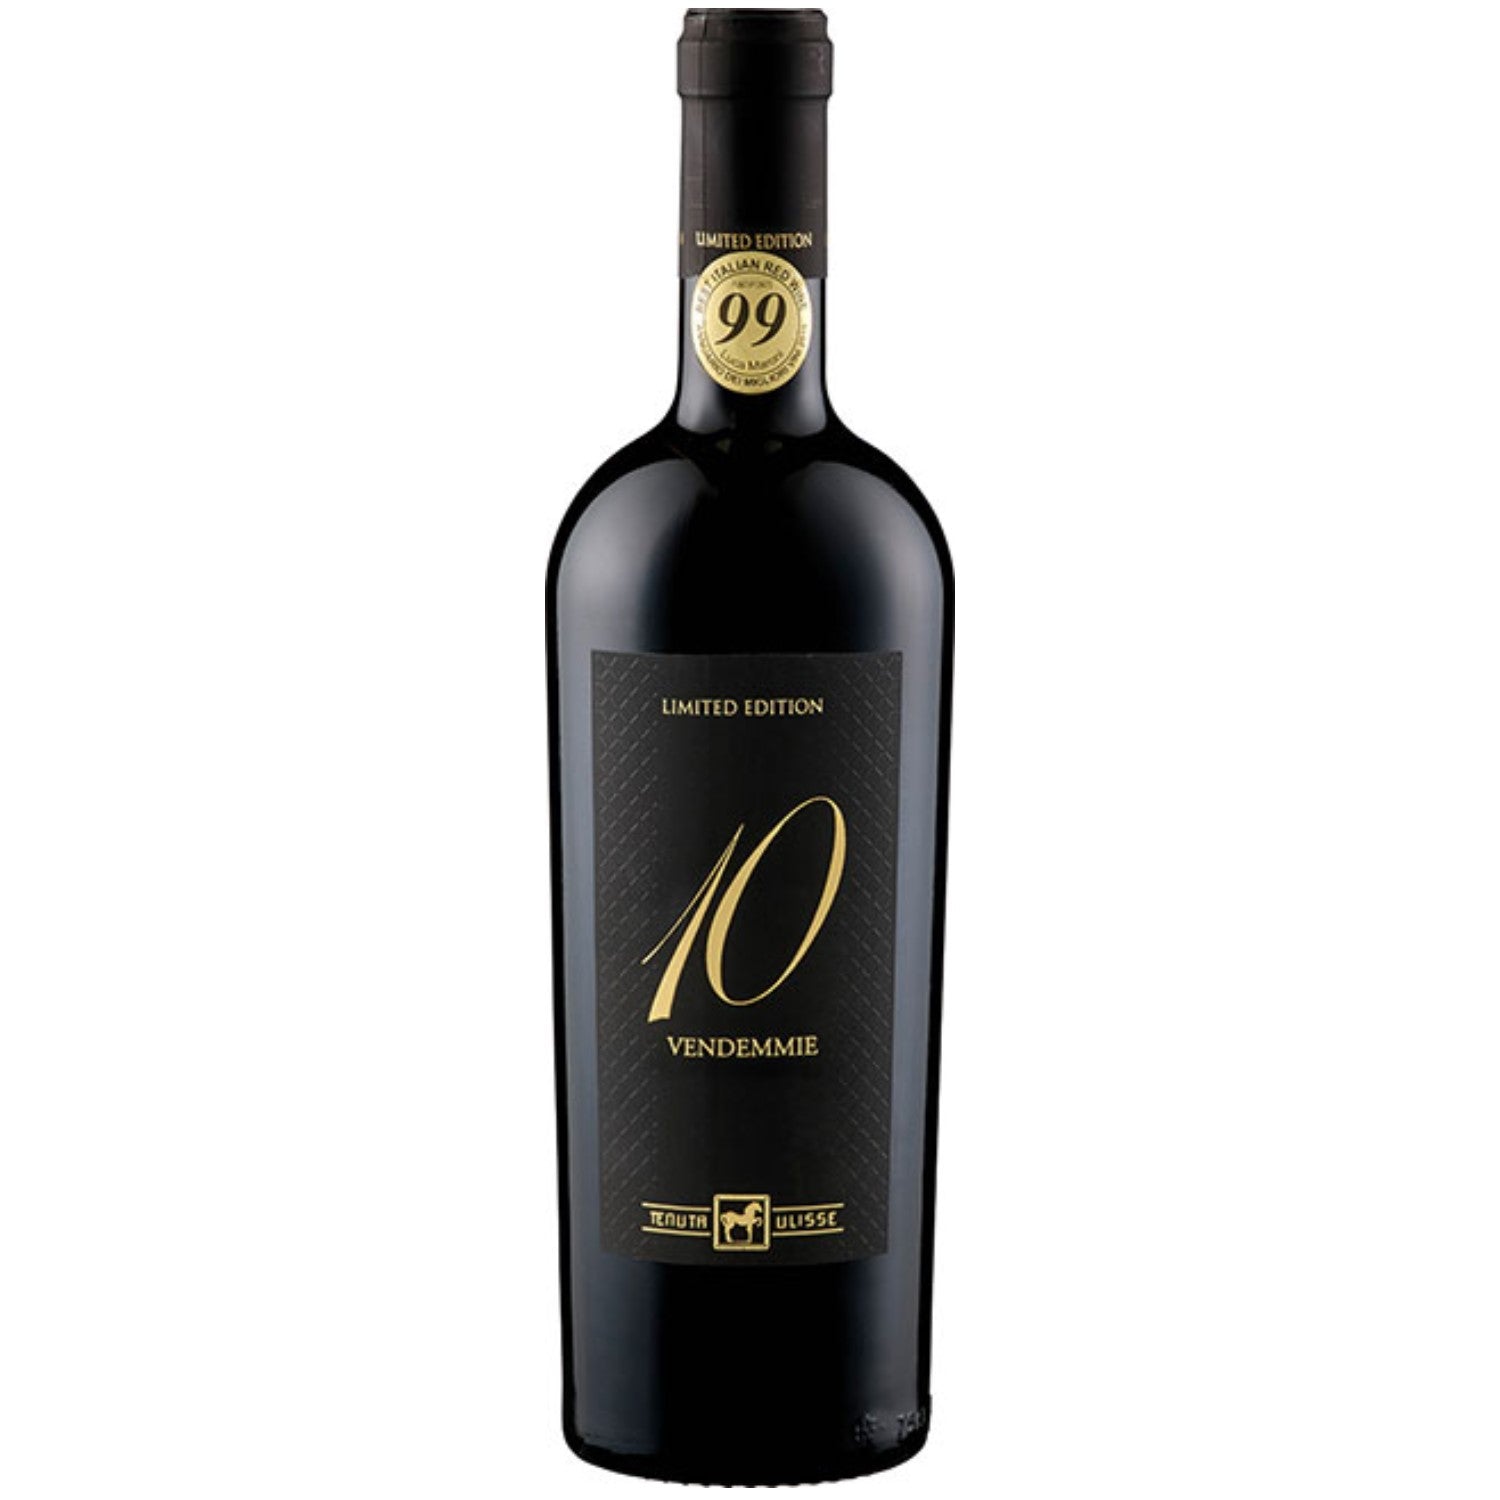 Tenuta Ulisse DIECI VENDEMMIE NV Montepulciano d'Abruzzo Rotwein Wein Halbtrocken Italien (12 x 0.75l) - Versanel -